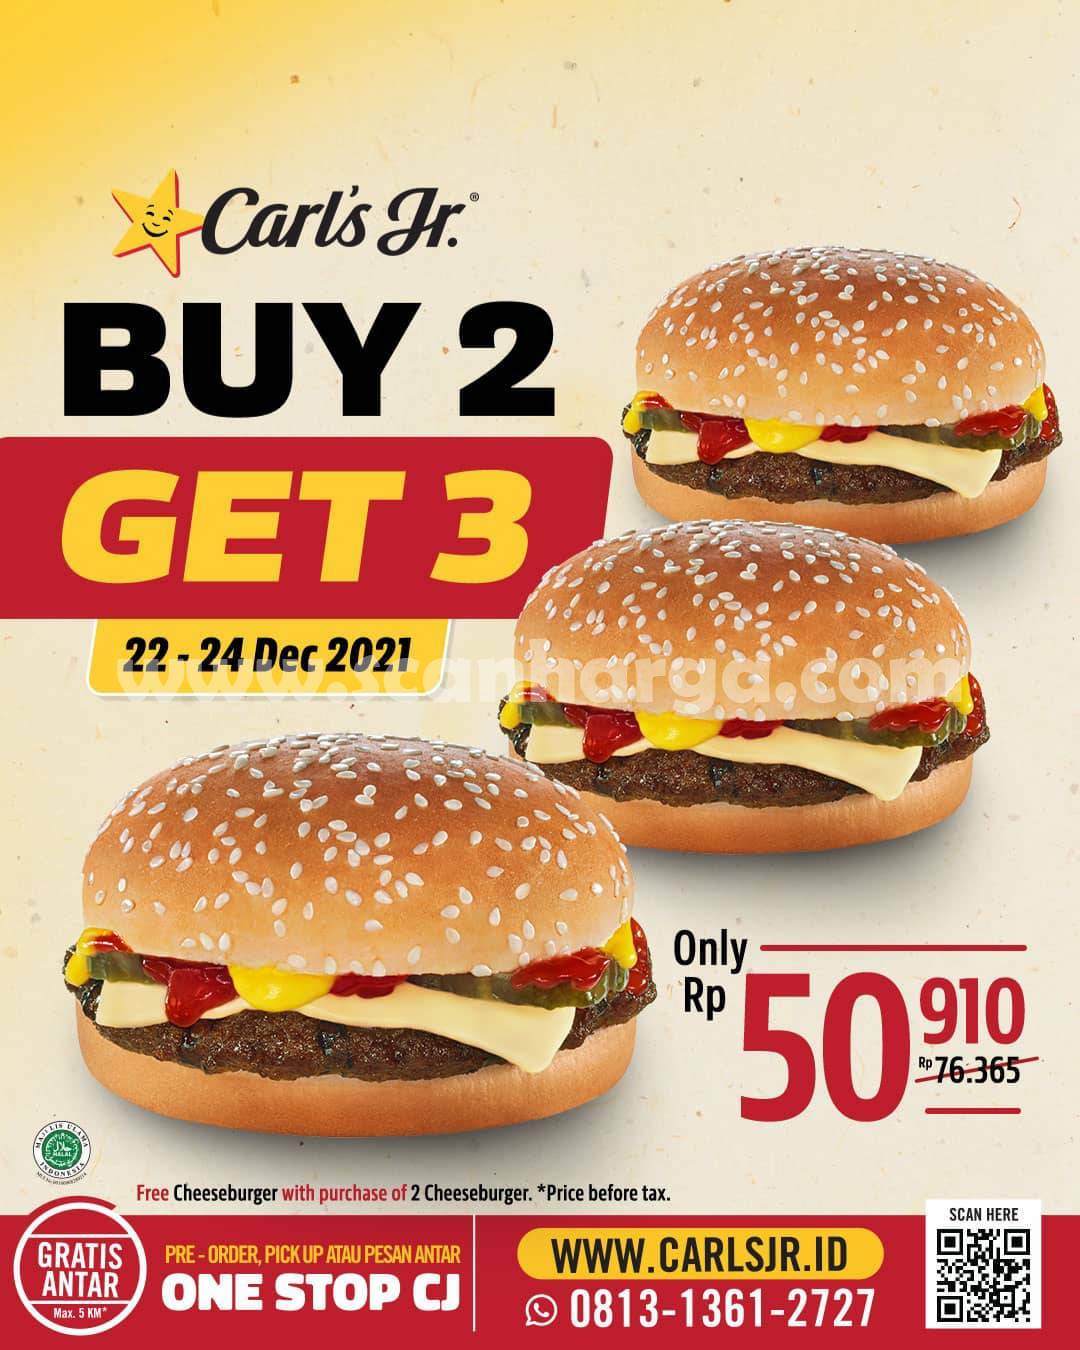 CARLS JR Promo Spesial Hari IBU – GRATIS 1 Cheeseburger